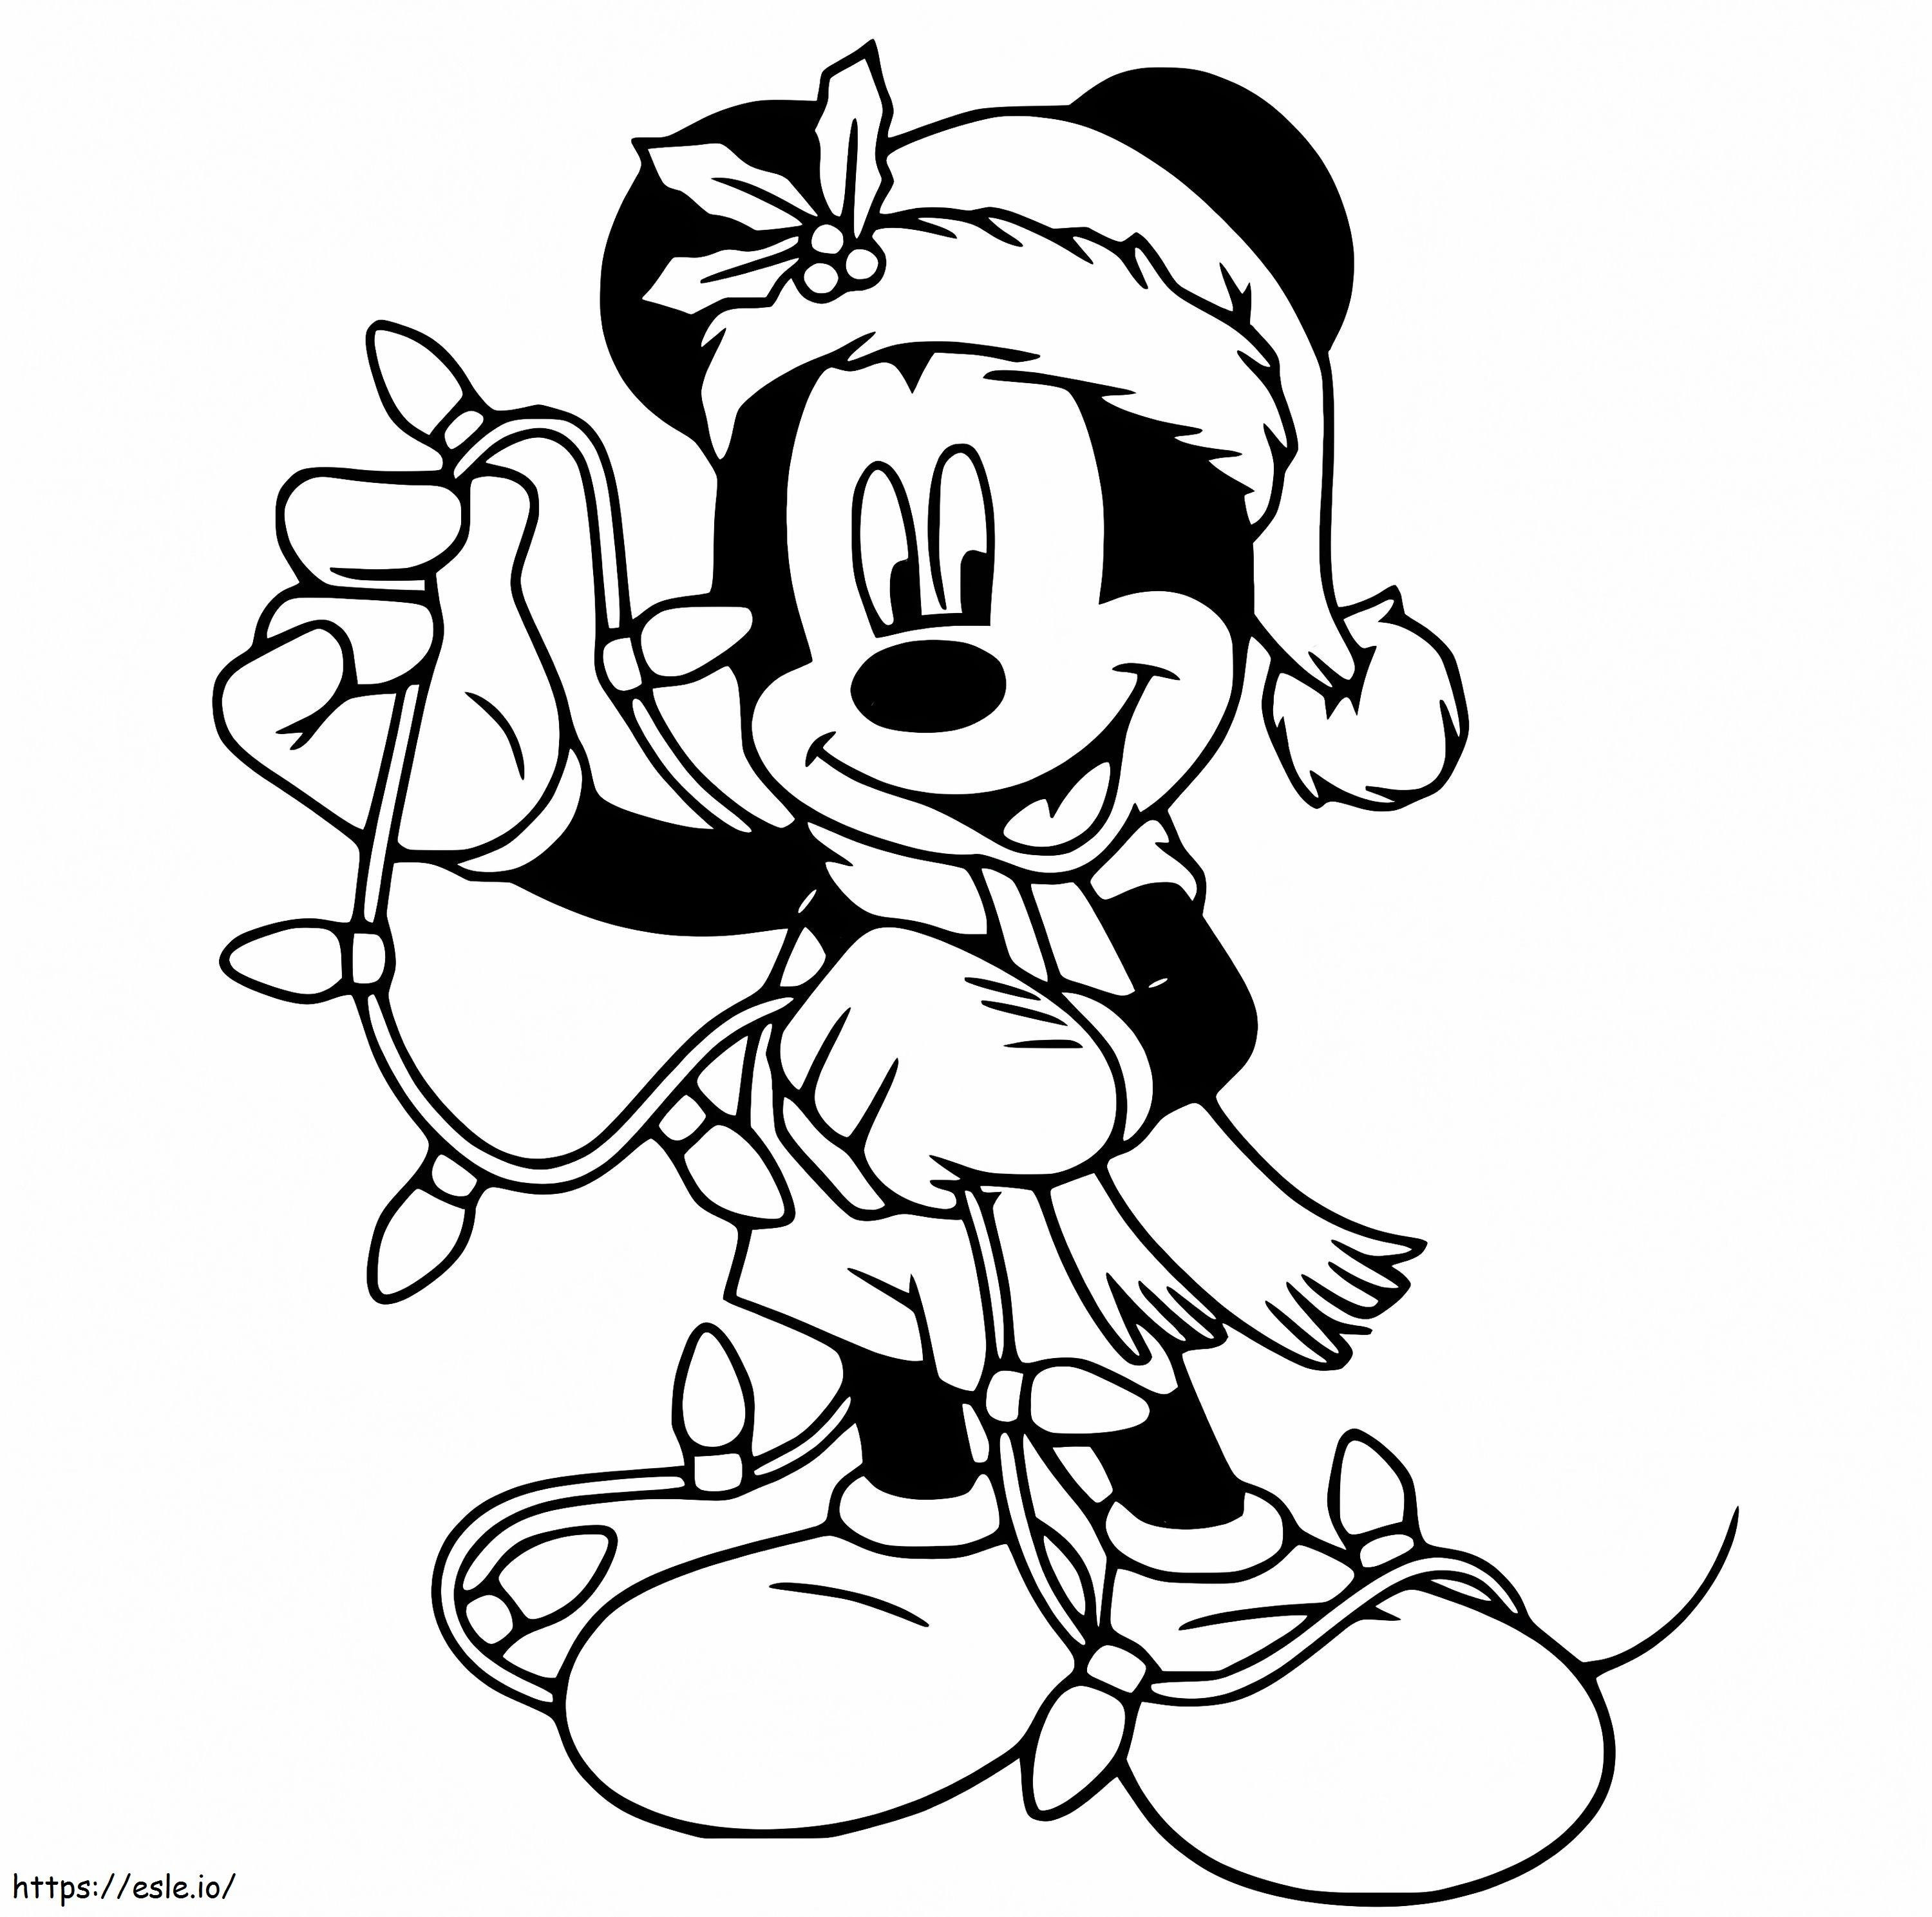 Mickey mit Weihnachtsbeleuchtung ausmalbilder